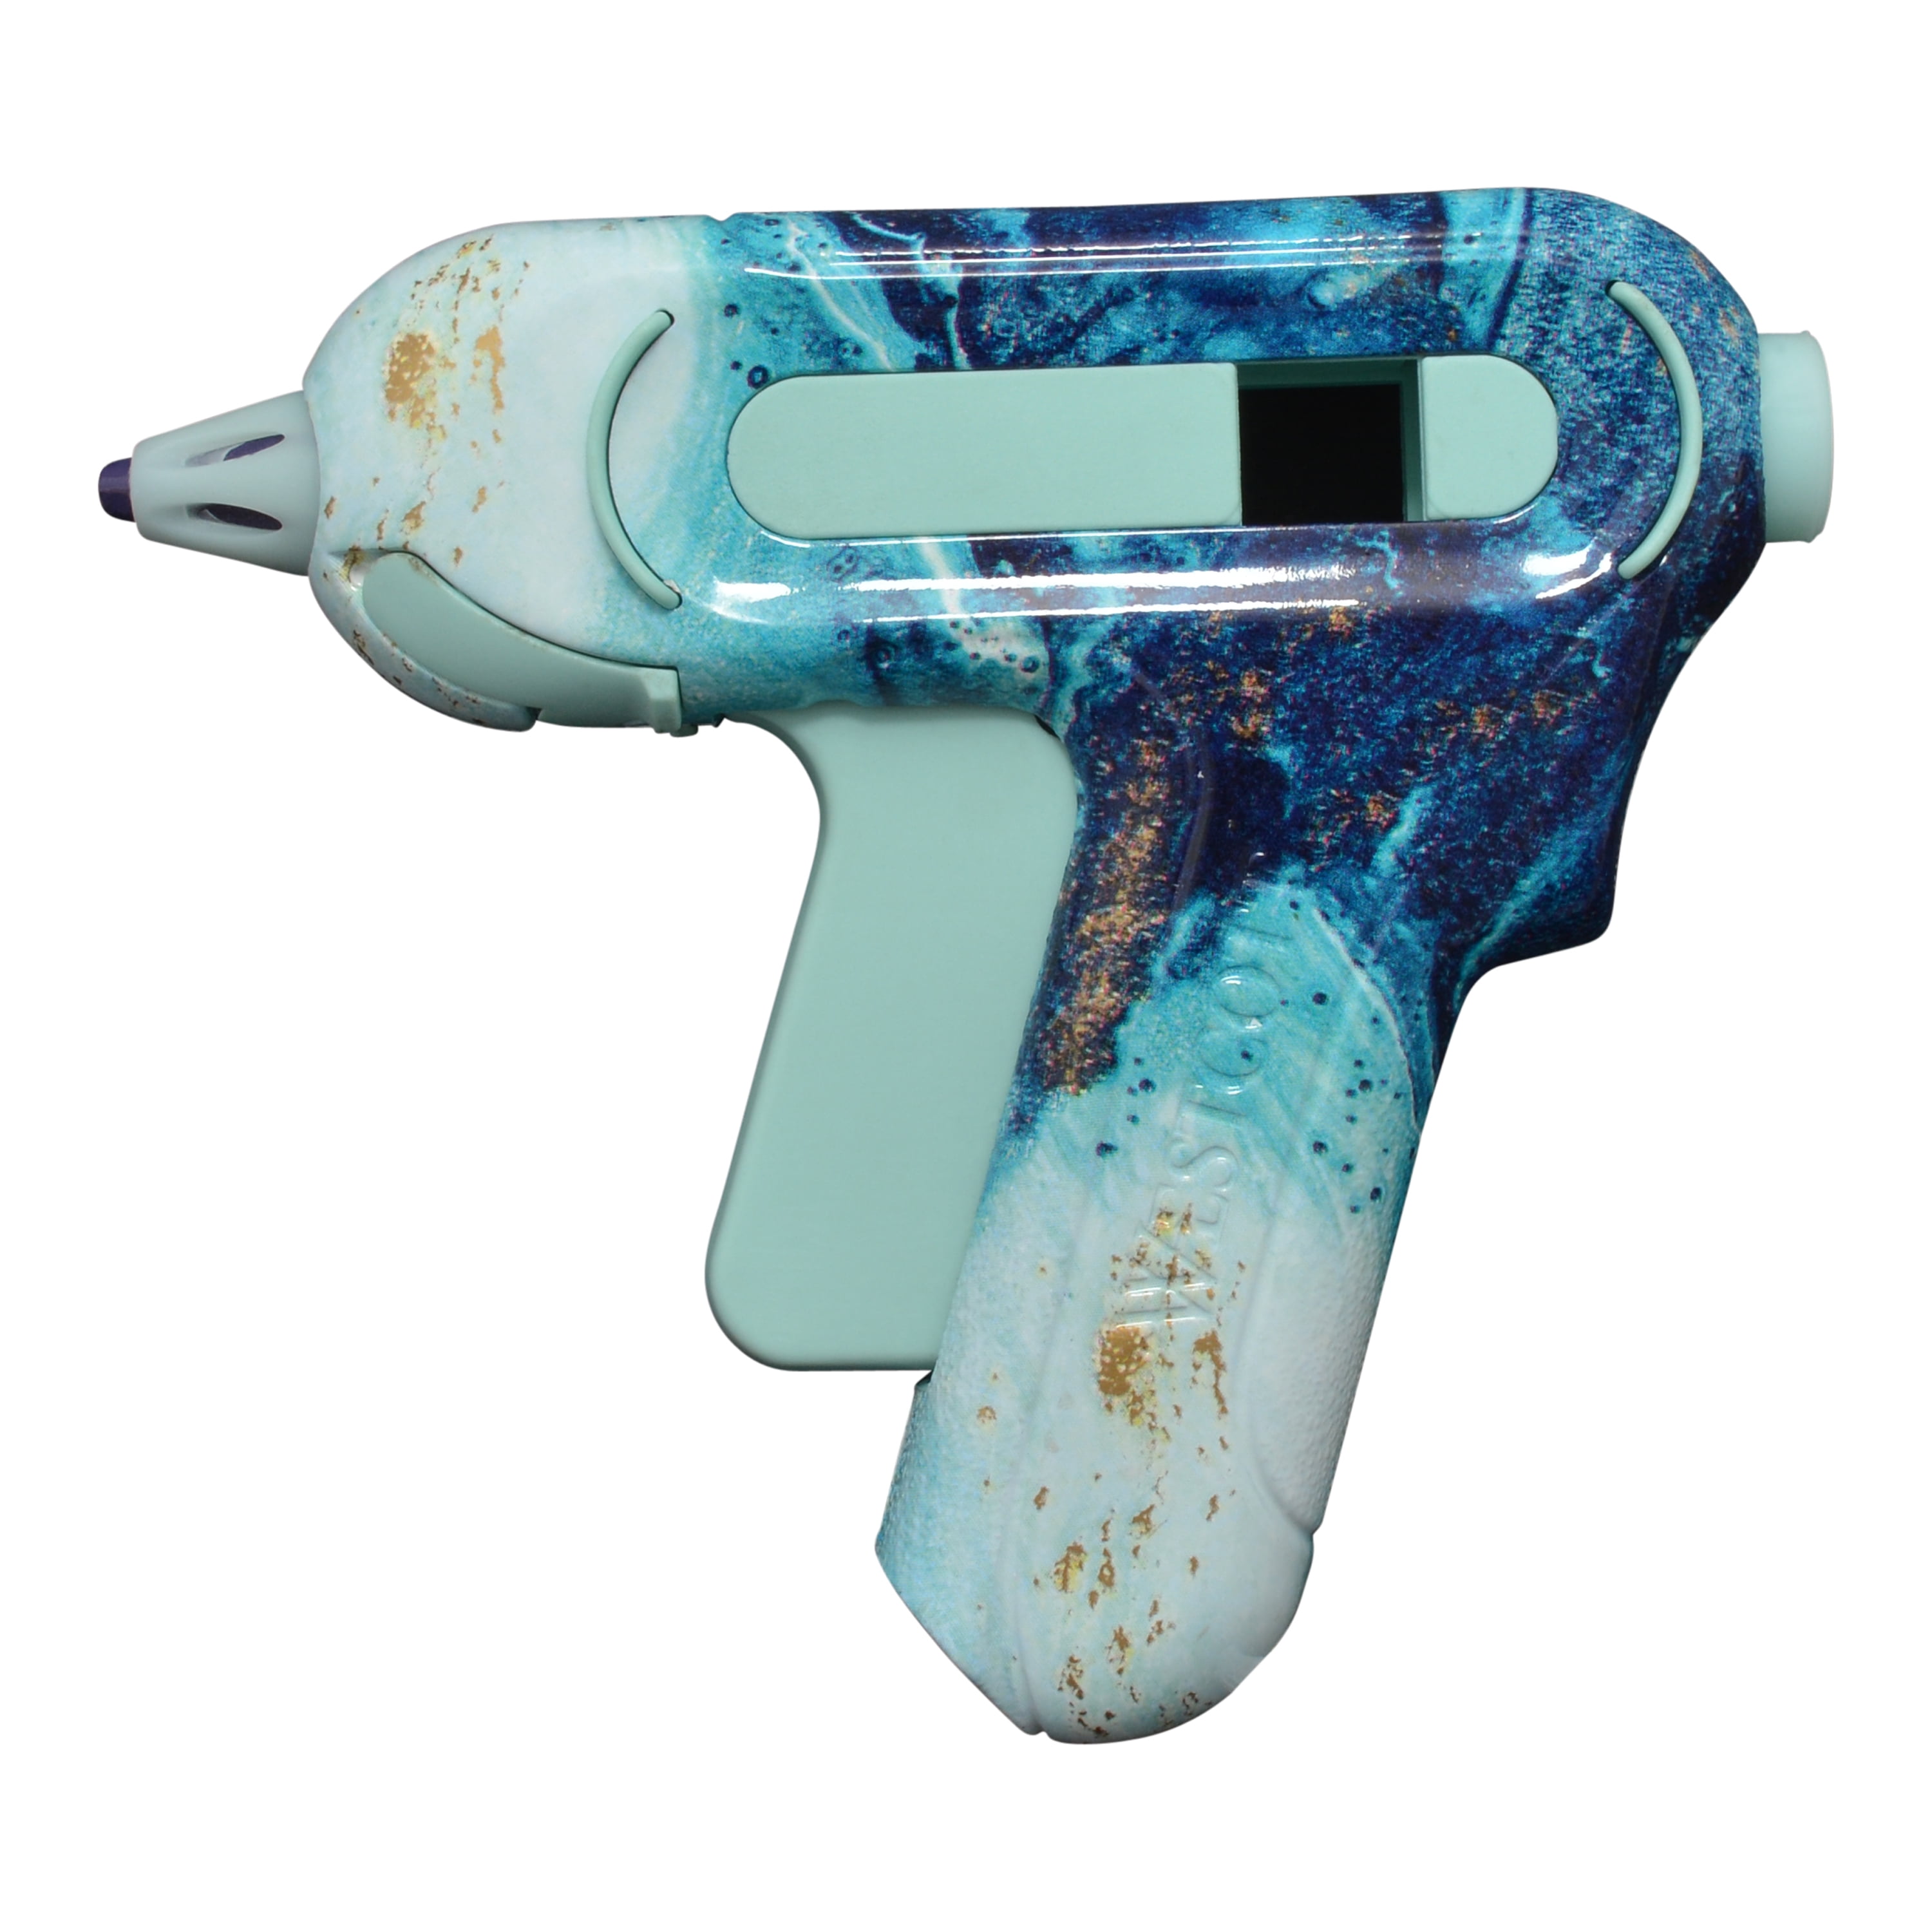 Westcott Premium Mid-Sized Hot Glue Gun